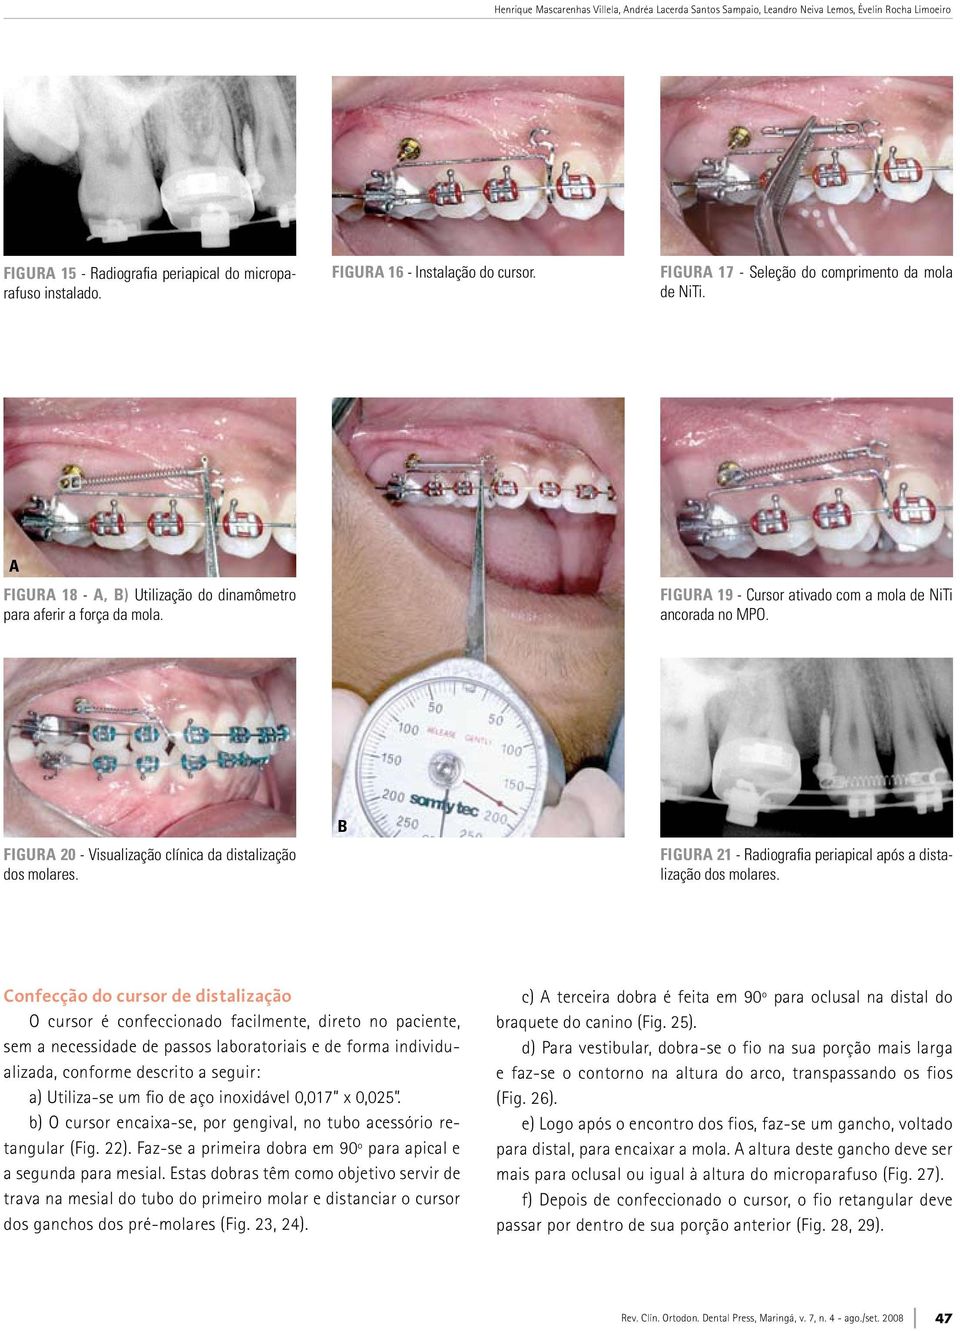 FIGURA 20 - Visualização clínica da distalização dos molares. b FIGURA 21 - Radiografia periapical após a distalização dos molares.